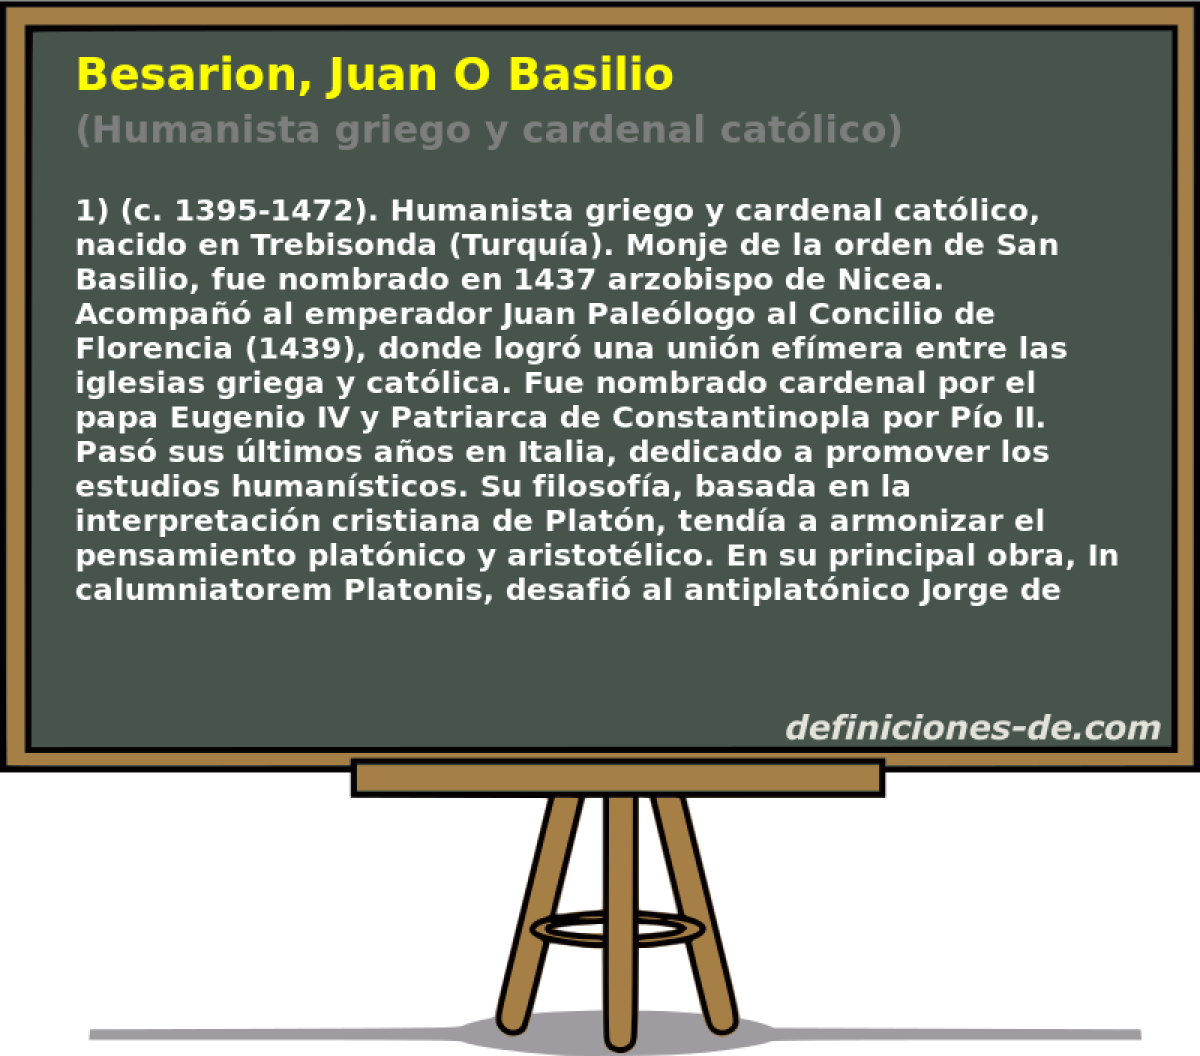 Besarion, Juan O Basilio (Humanista griego y cardenal catlico)